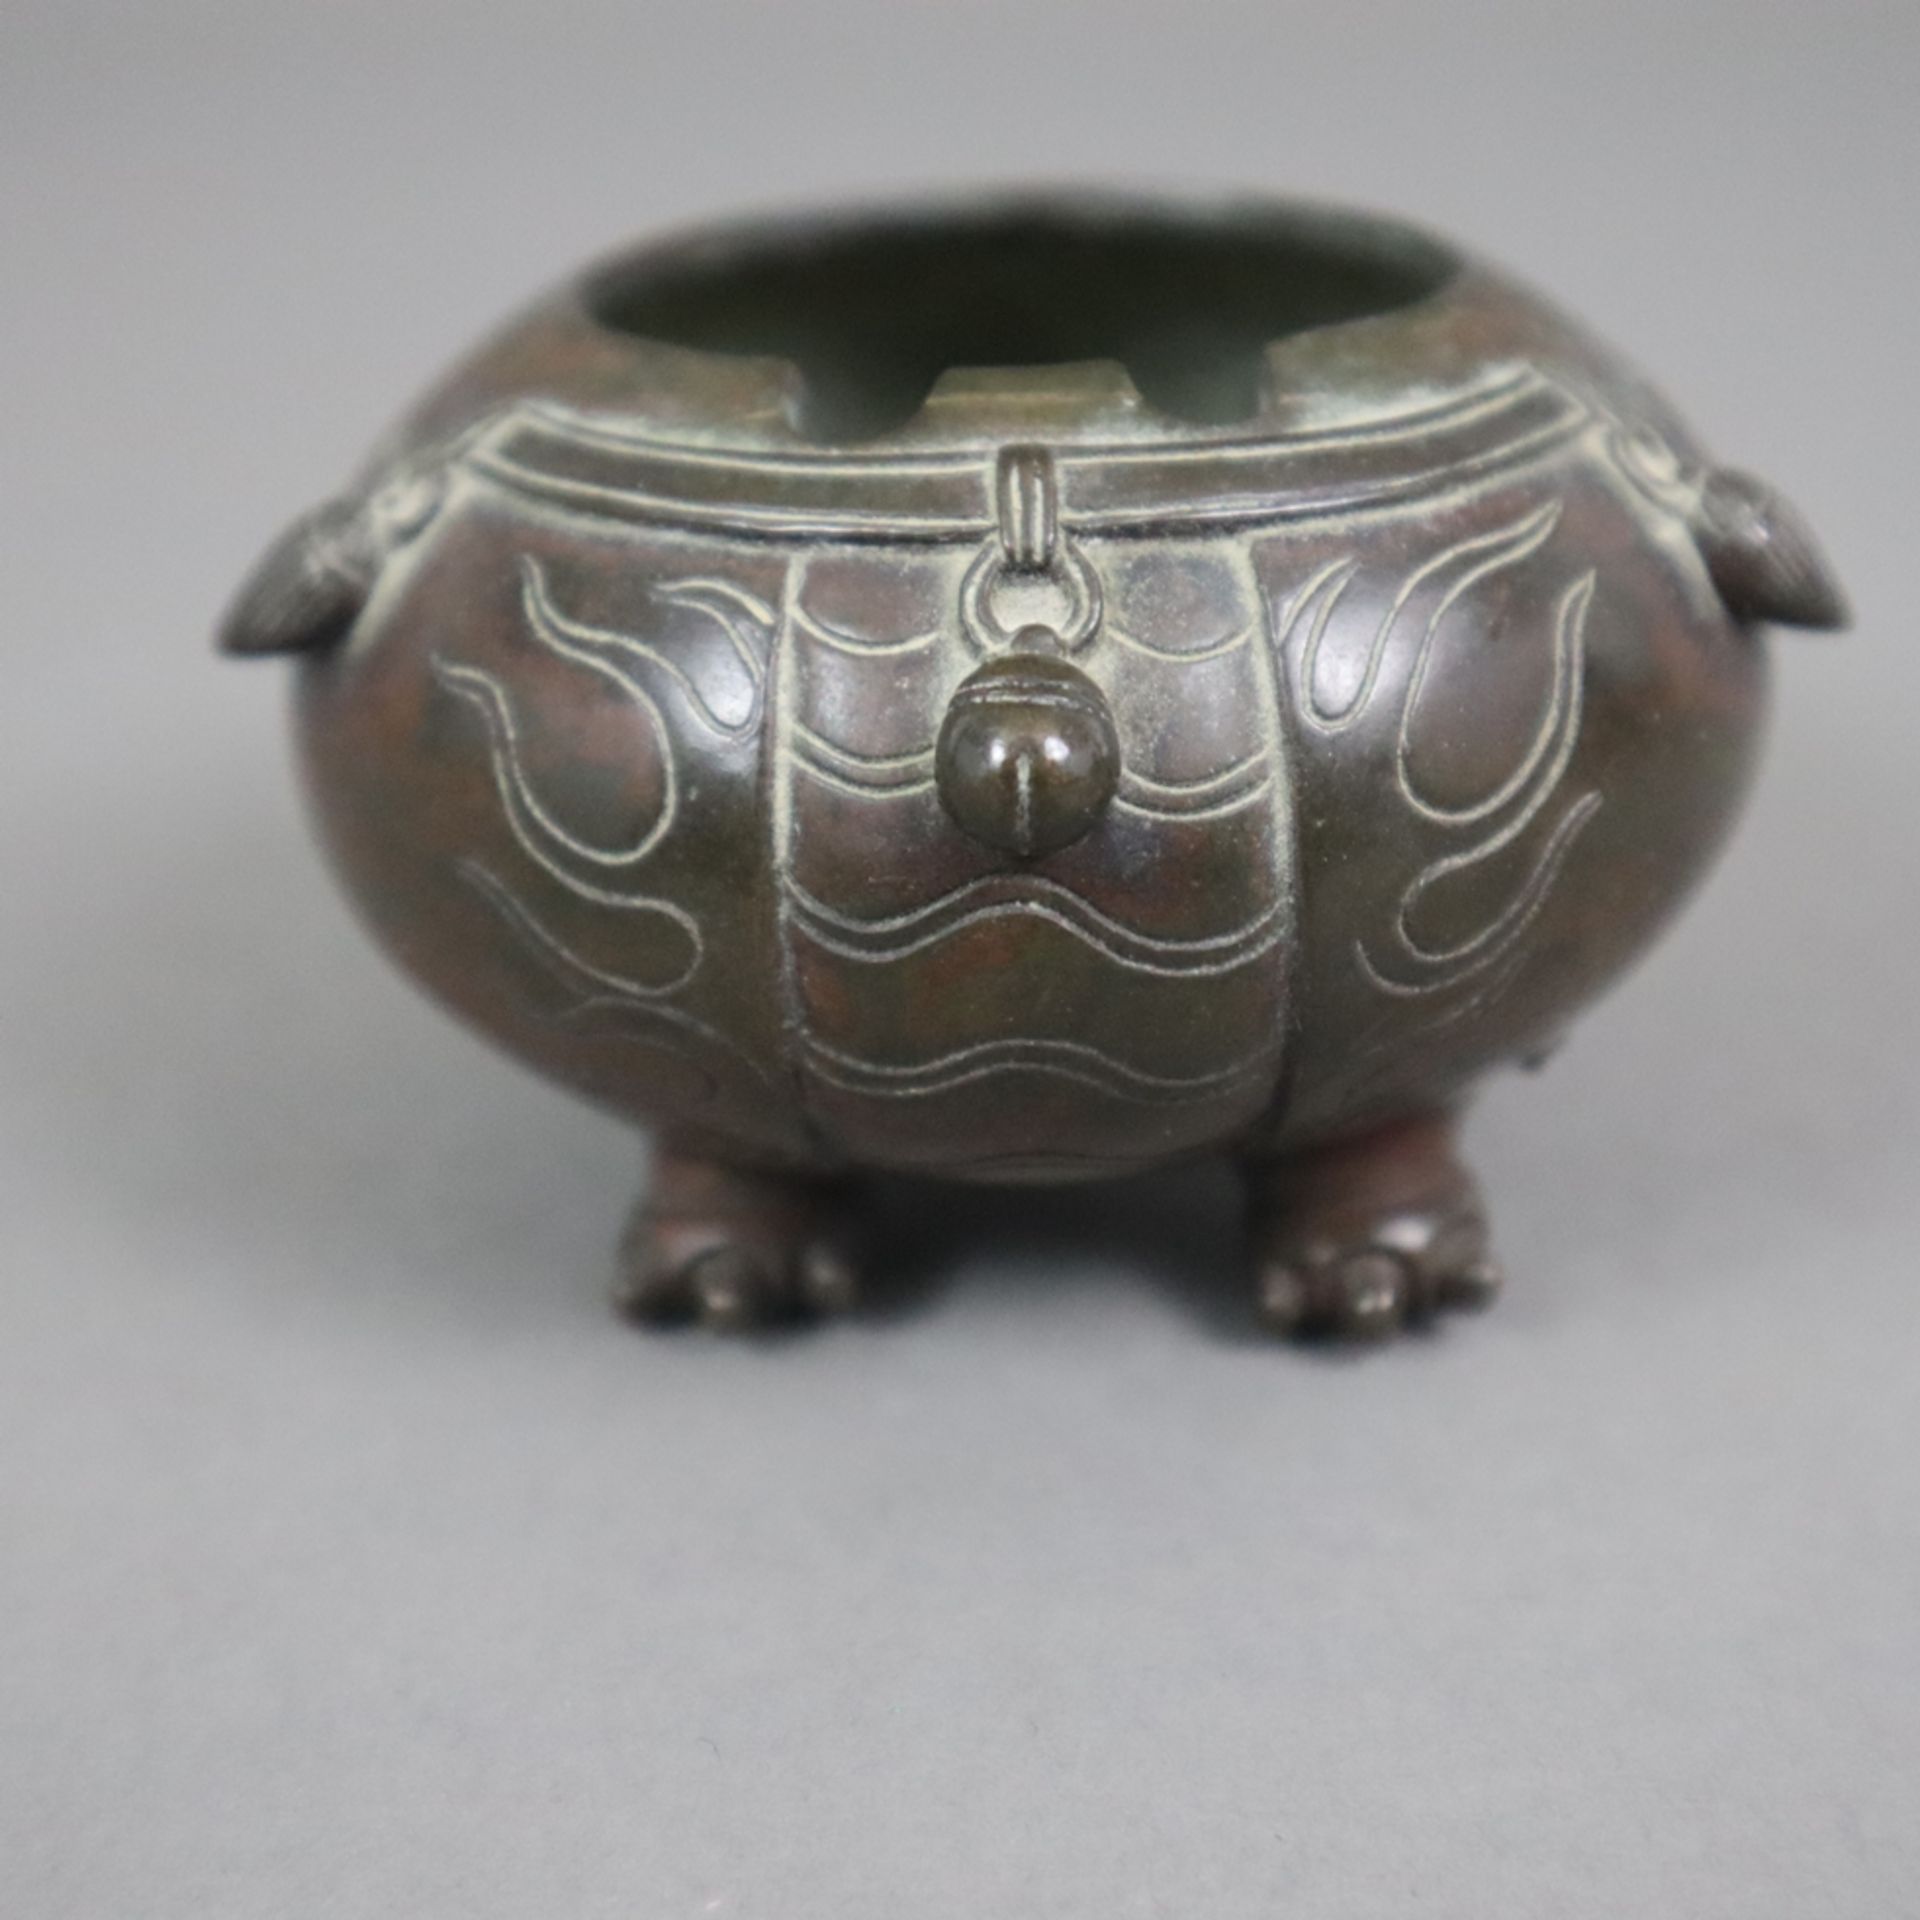 Kleiner figürlicher Koro - Japan, Bronze, braun patiniert, in Gestalt eines runden Shishi, Steckdec - Bild 4 aus 6